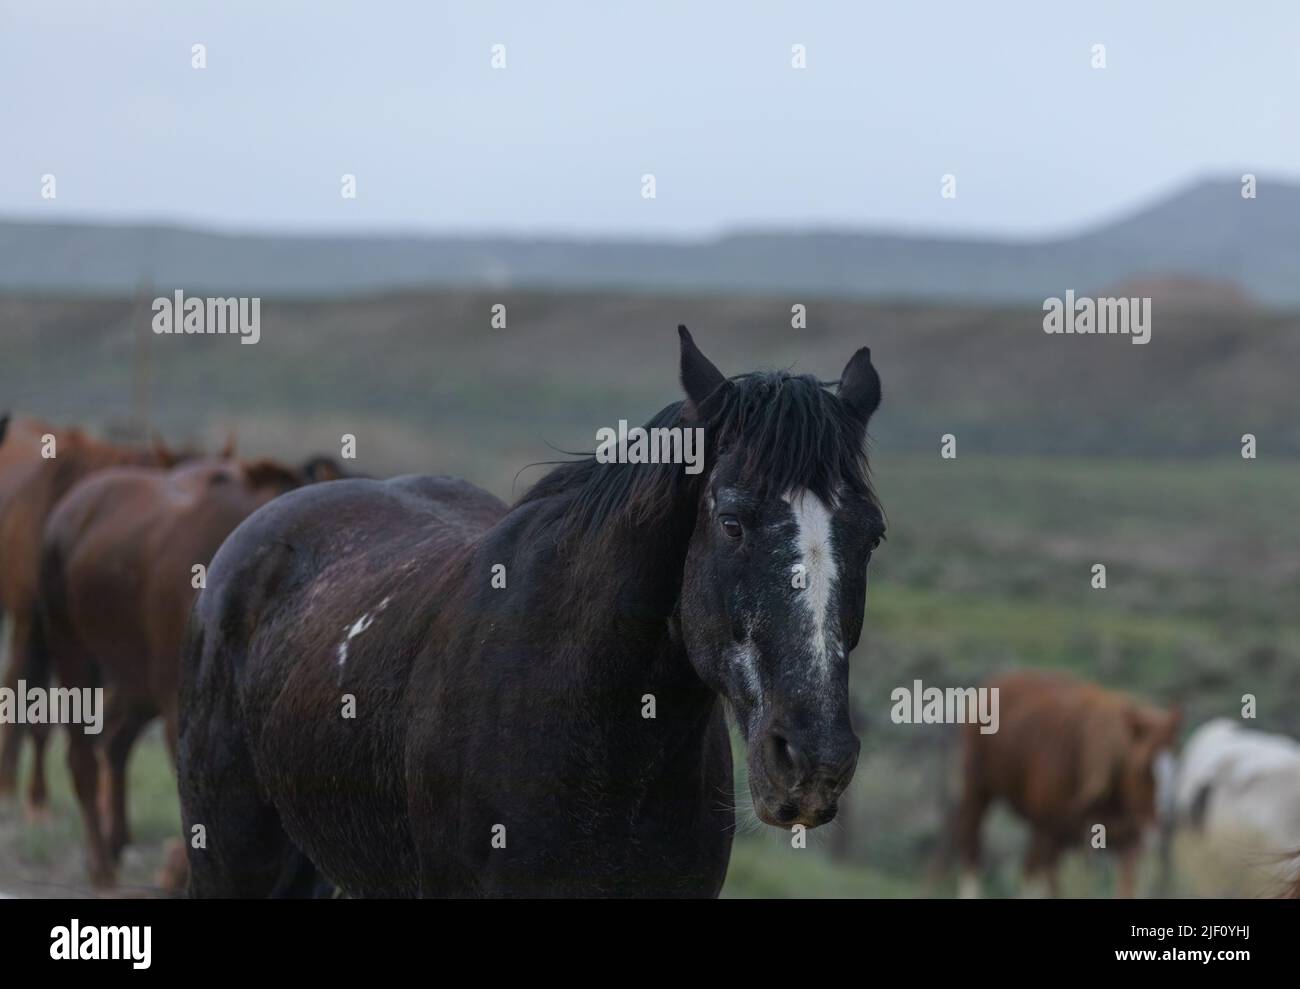 Troupeau de chevaux dans le Colorado sur un paysage poussiéreux. Troupeau de chevaux de ranch colorés faisant un sentier poussiéreux sur leur chemin dans les pâturages d'hiver.Overcast Day. Banque D'Images